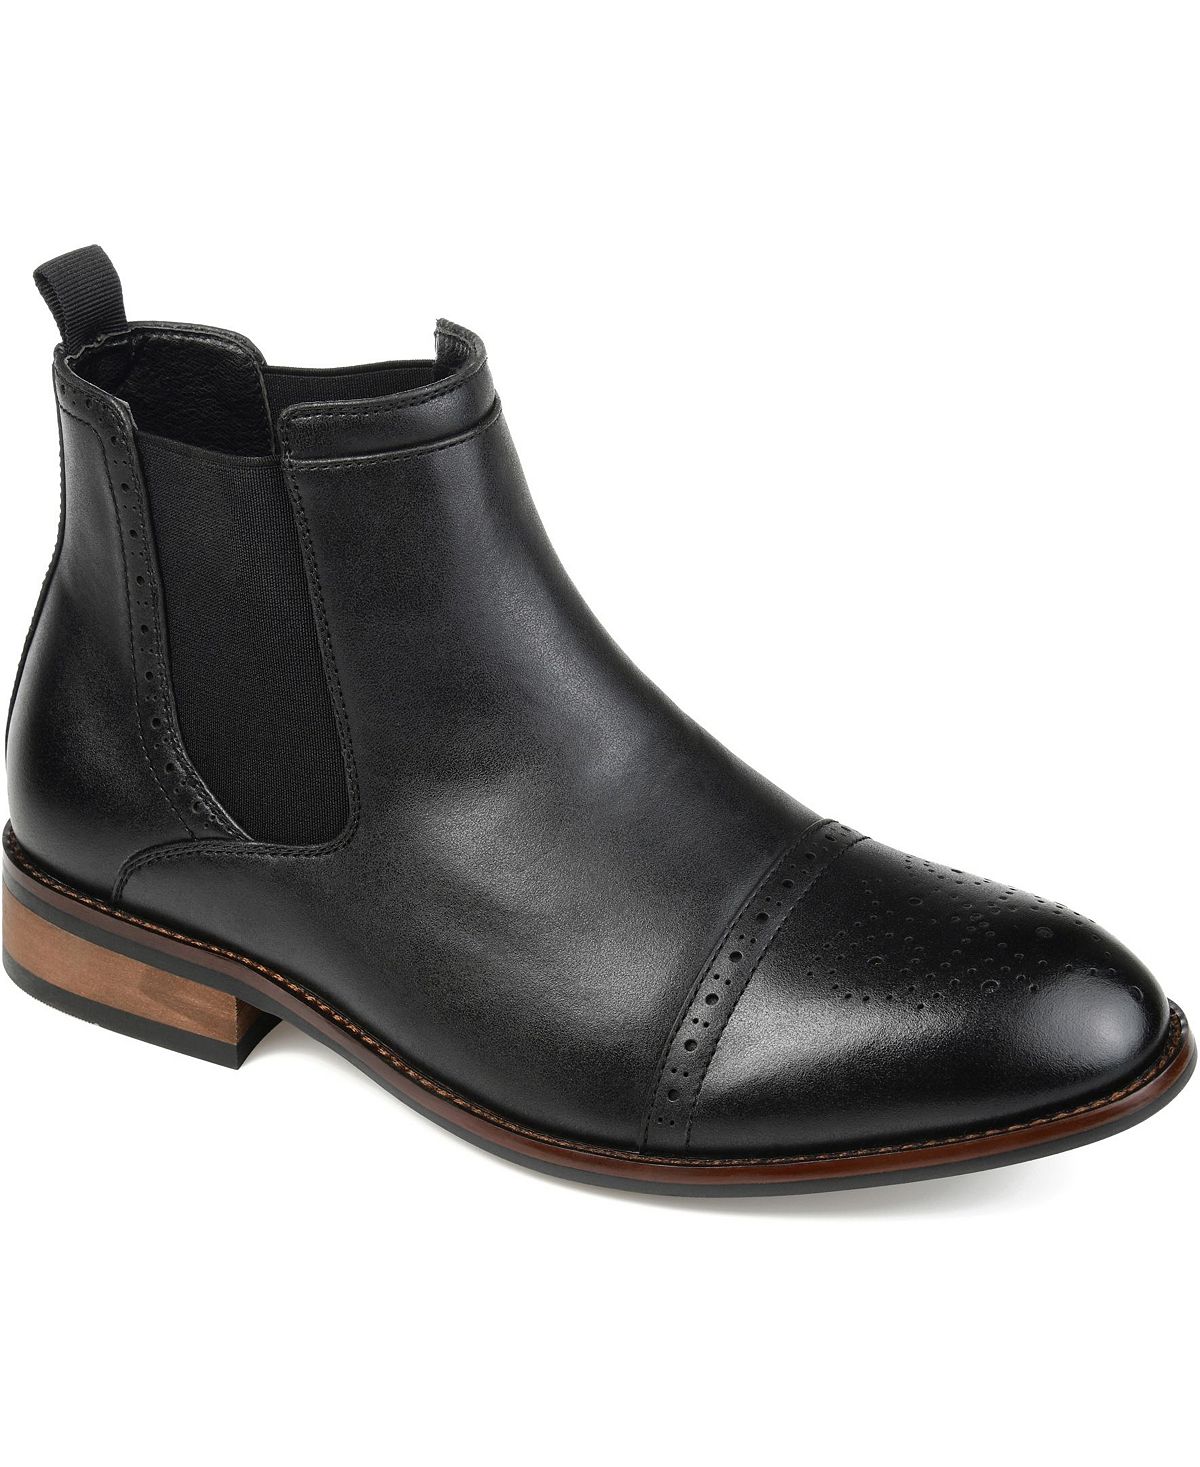 Мужские ботинки челси garrett cap toe Vance Co., черный цена и фото